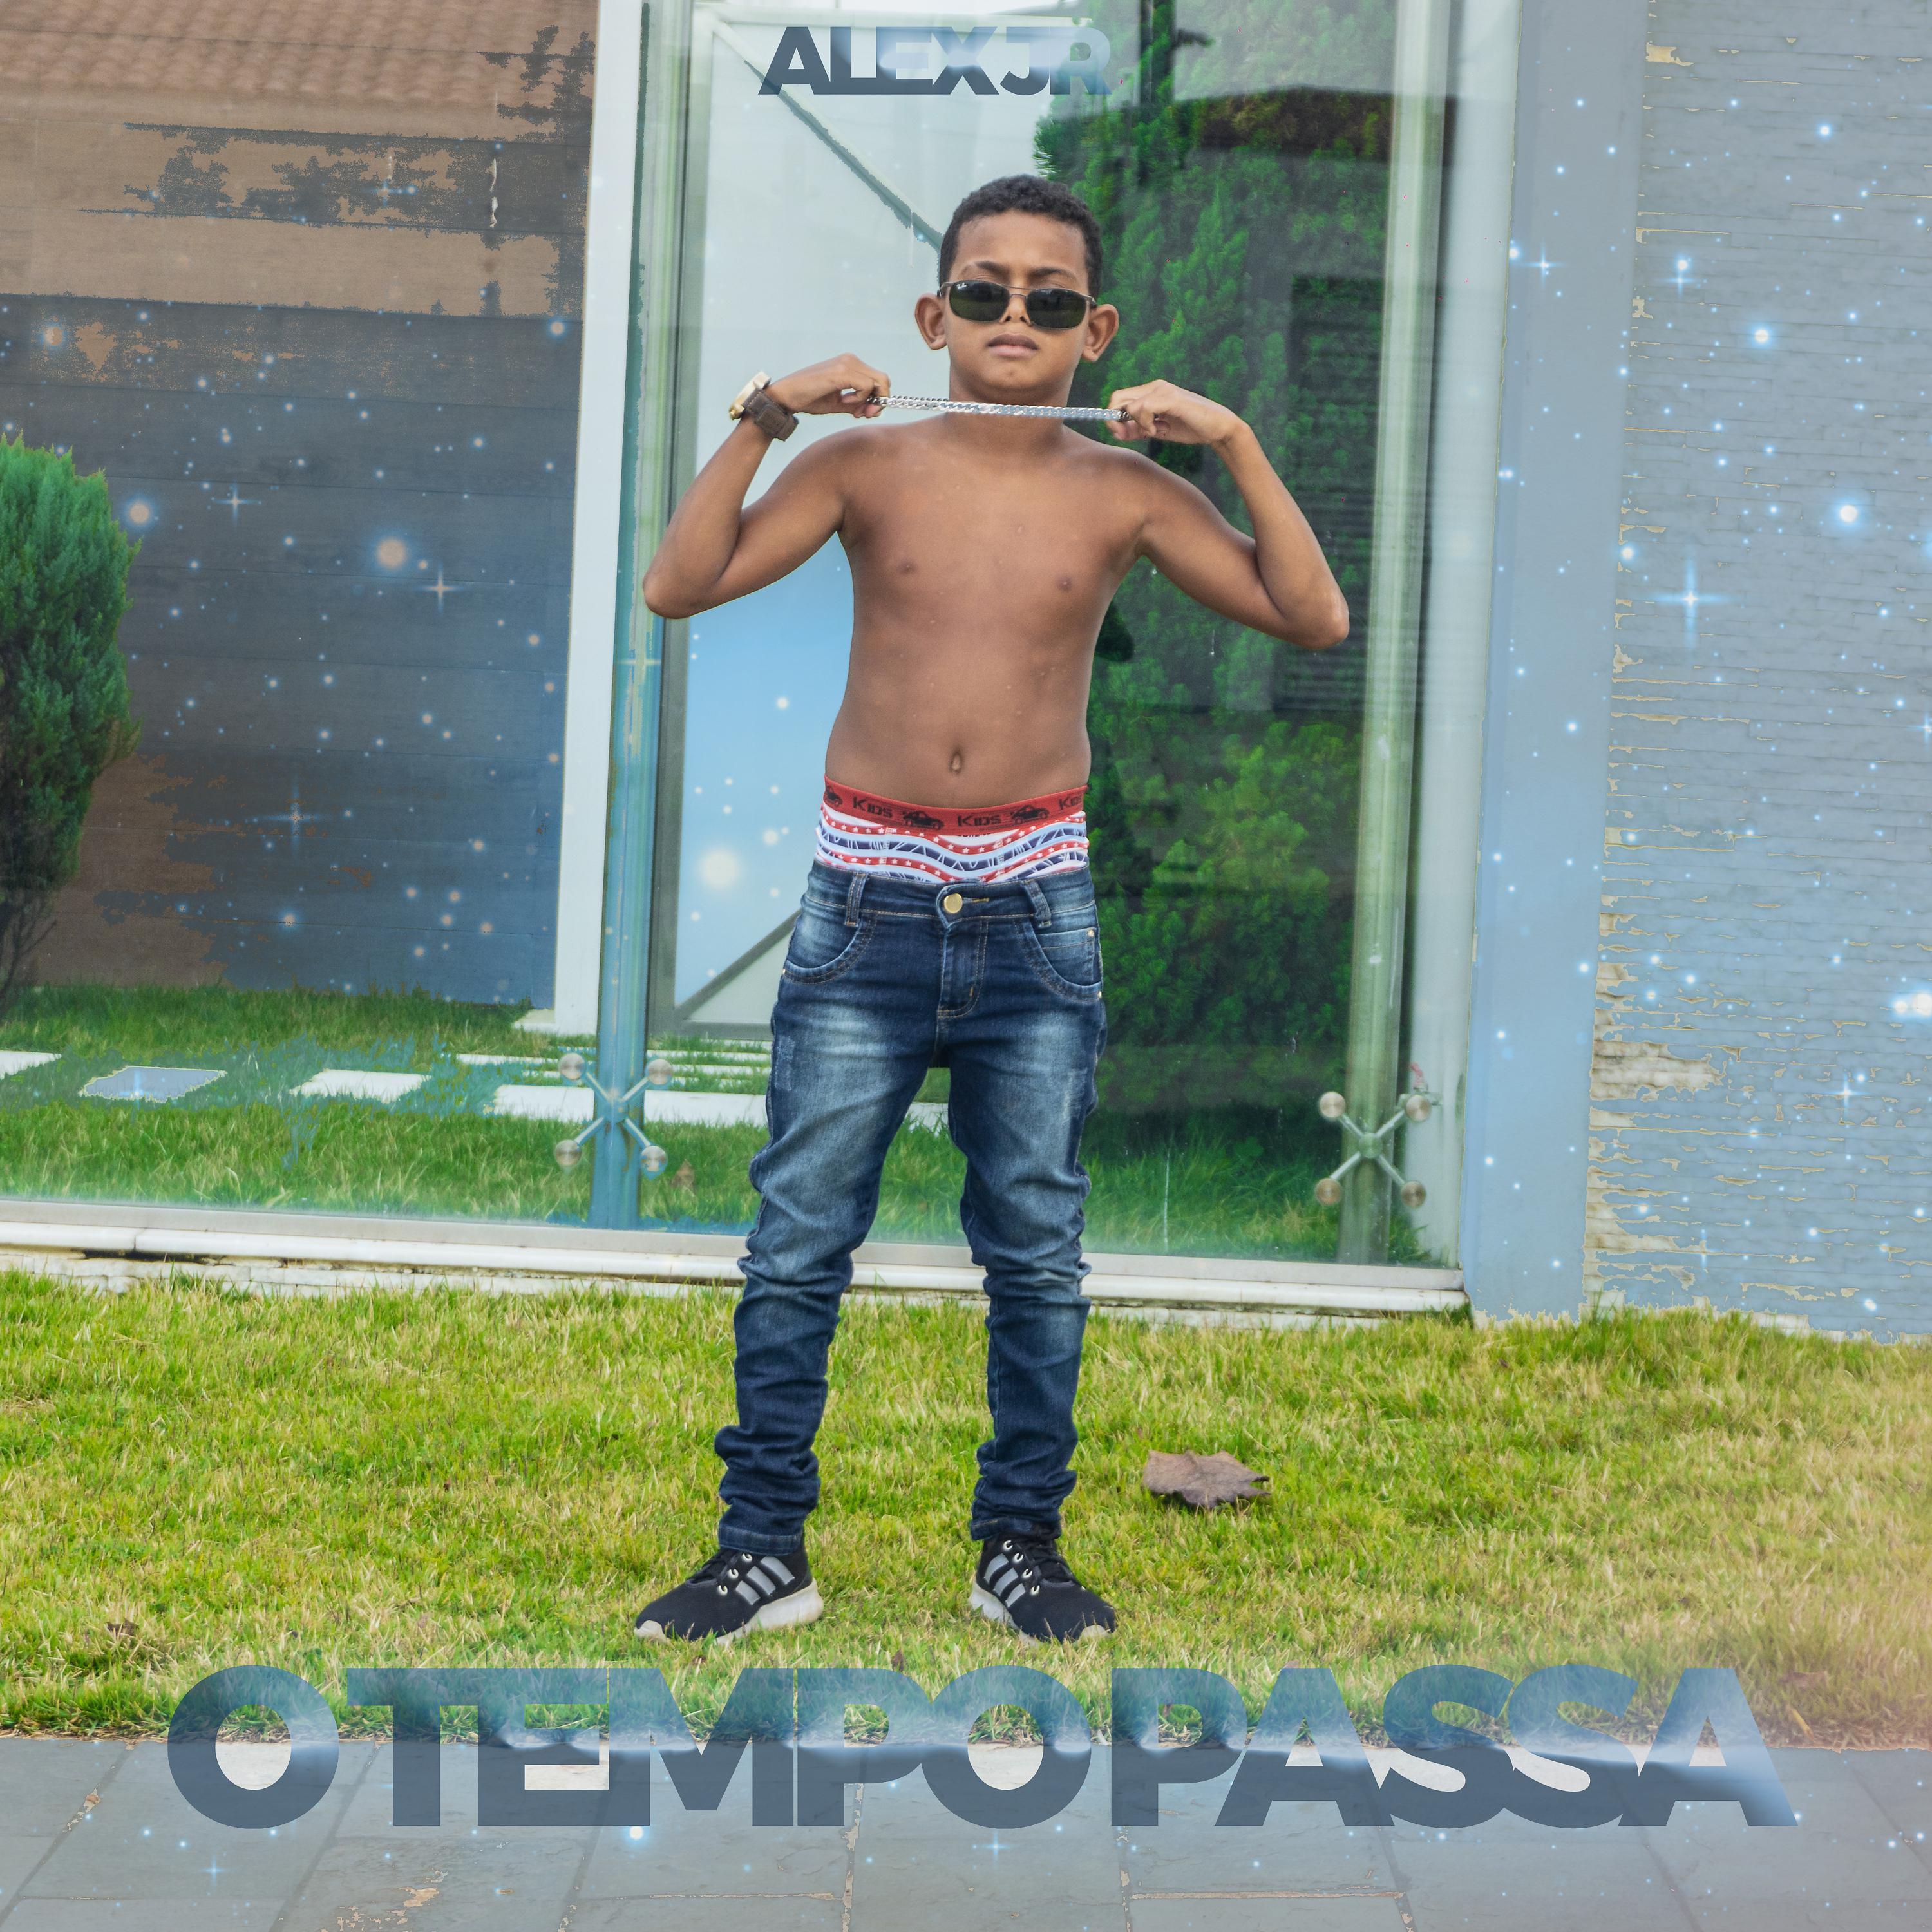 Постер альбома O Tempo Passa